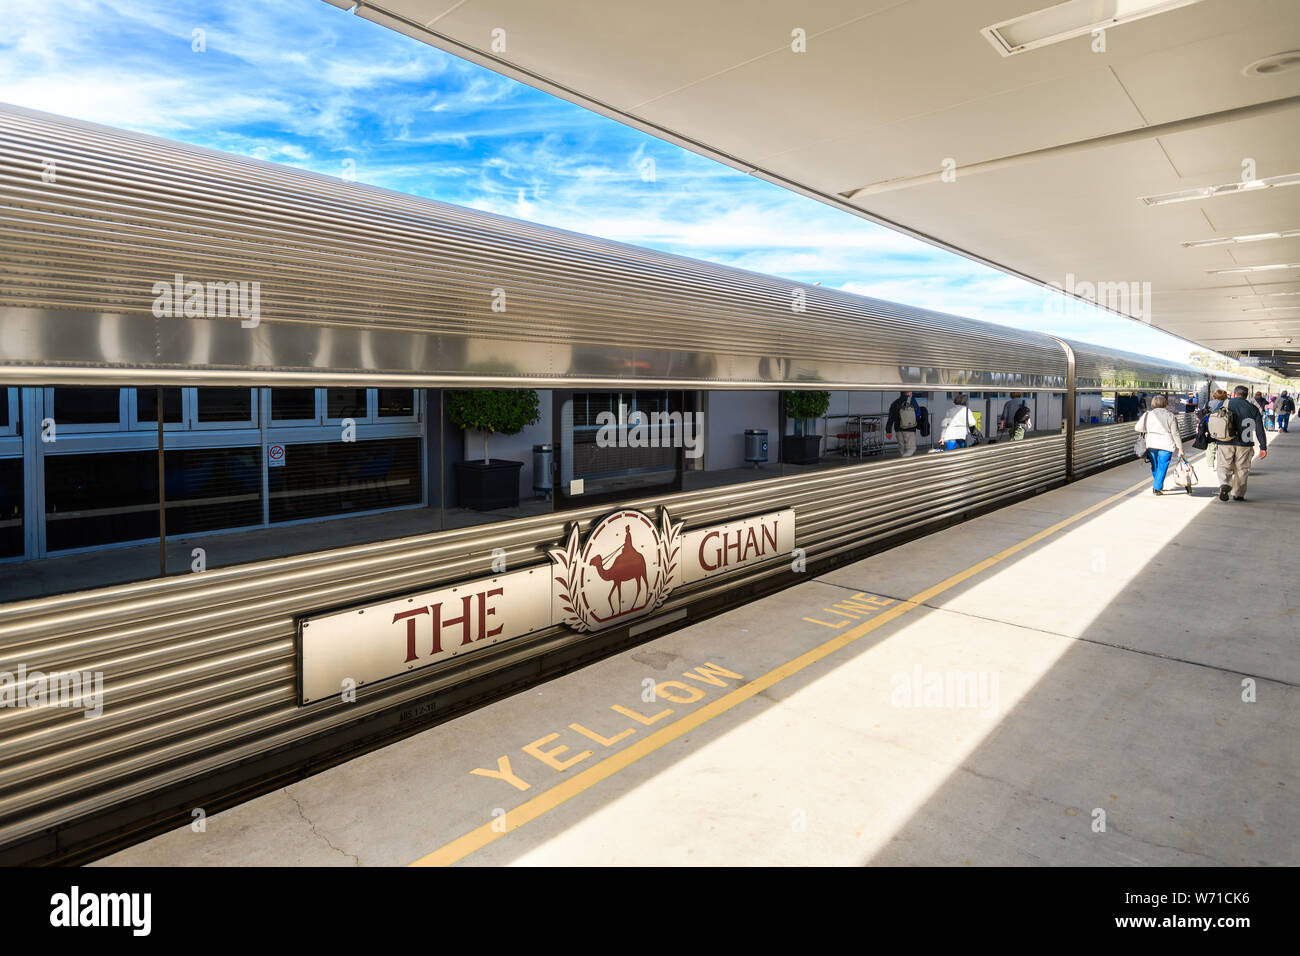 Les parcs d'Adélaïde, Australie du Sud Terminal - 4 août 2019 : Le Ghan train prêt à partir pour son 90e anniversaire de service spécial d'Adelaide t Banque D'Images